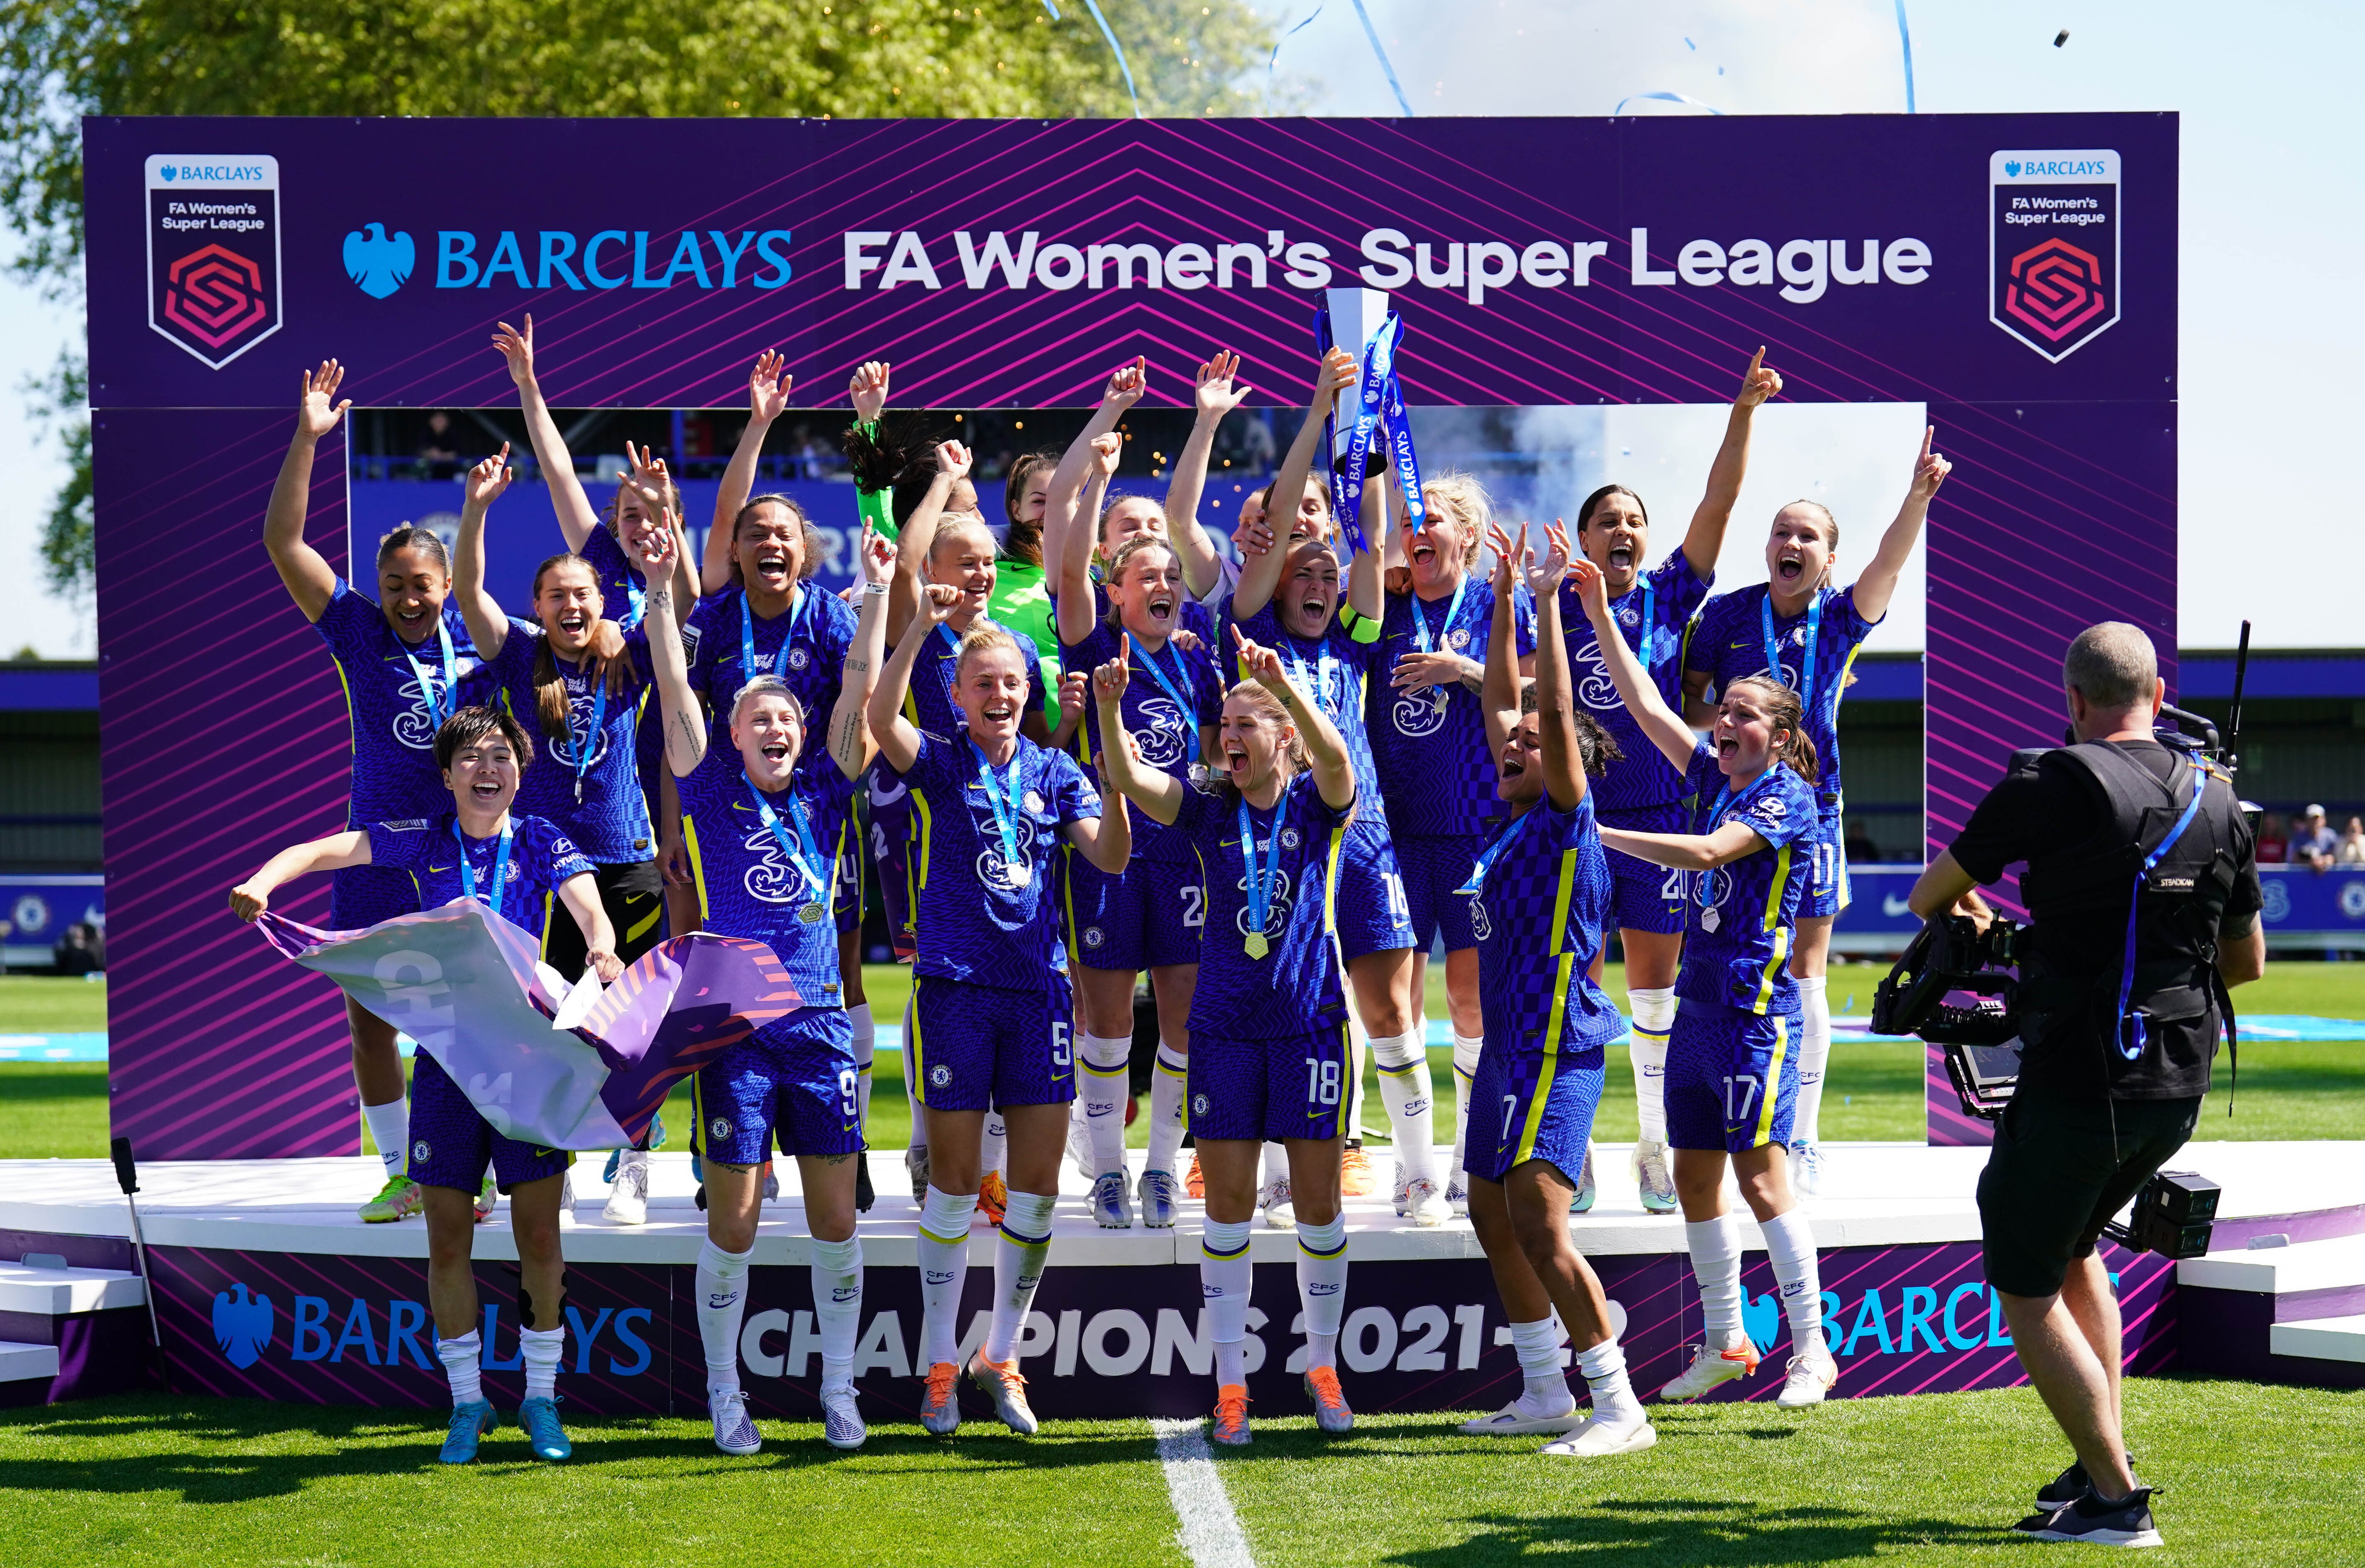 Chelsea celebrate winning last year’s Women’s Super League title